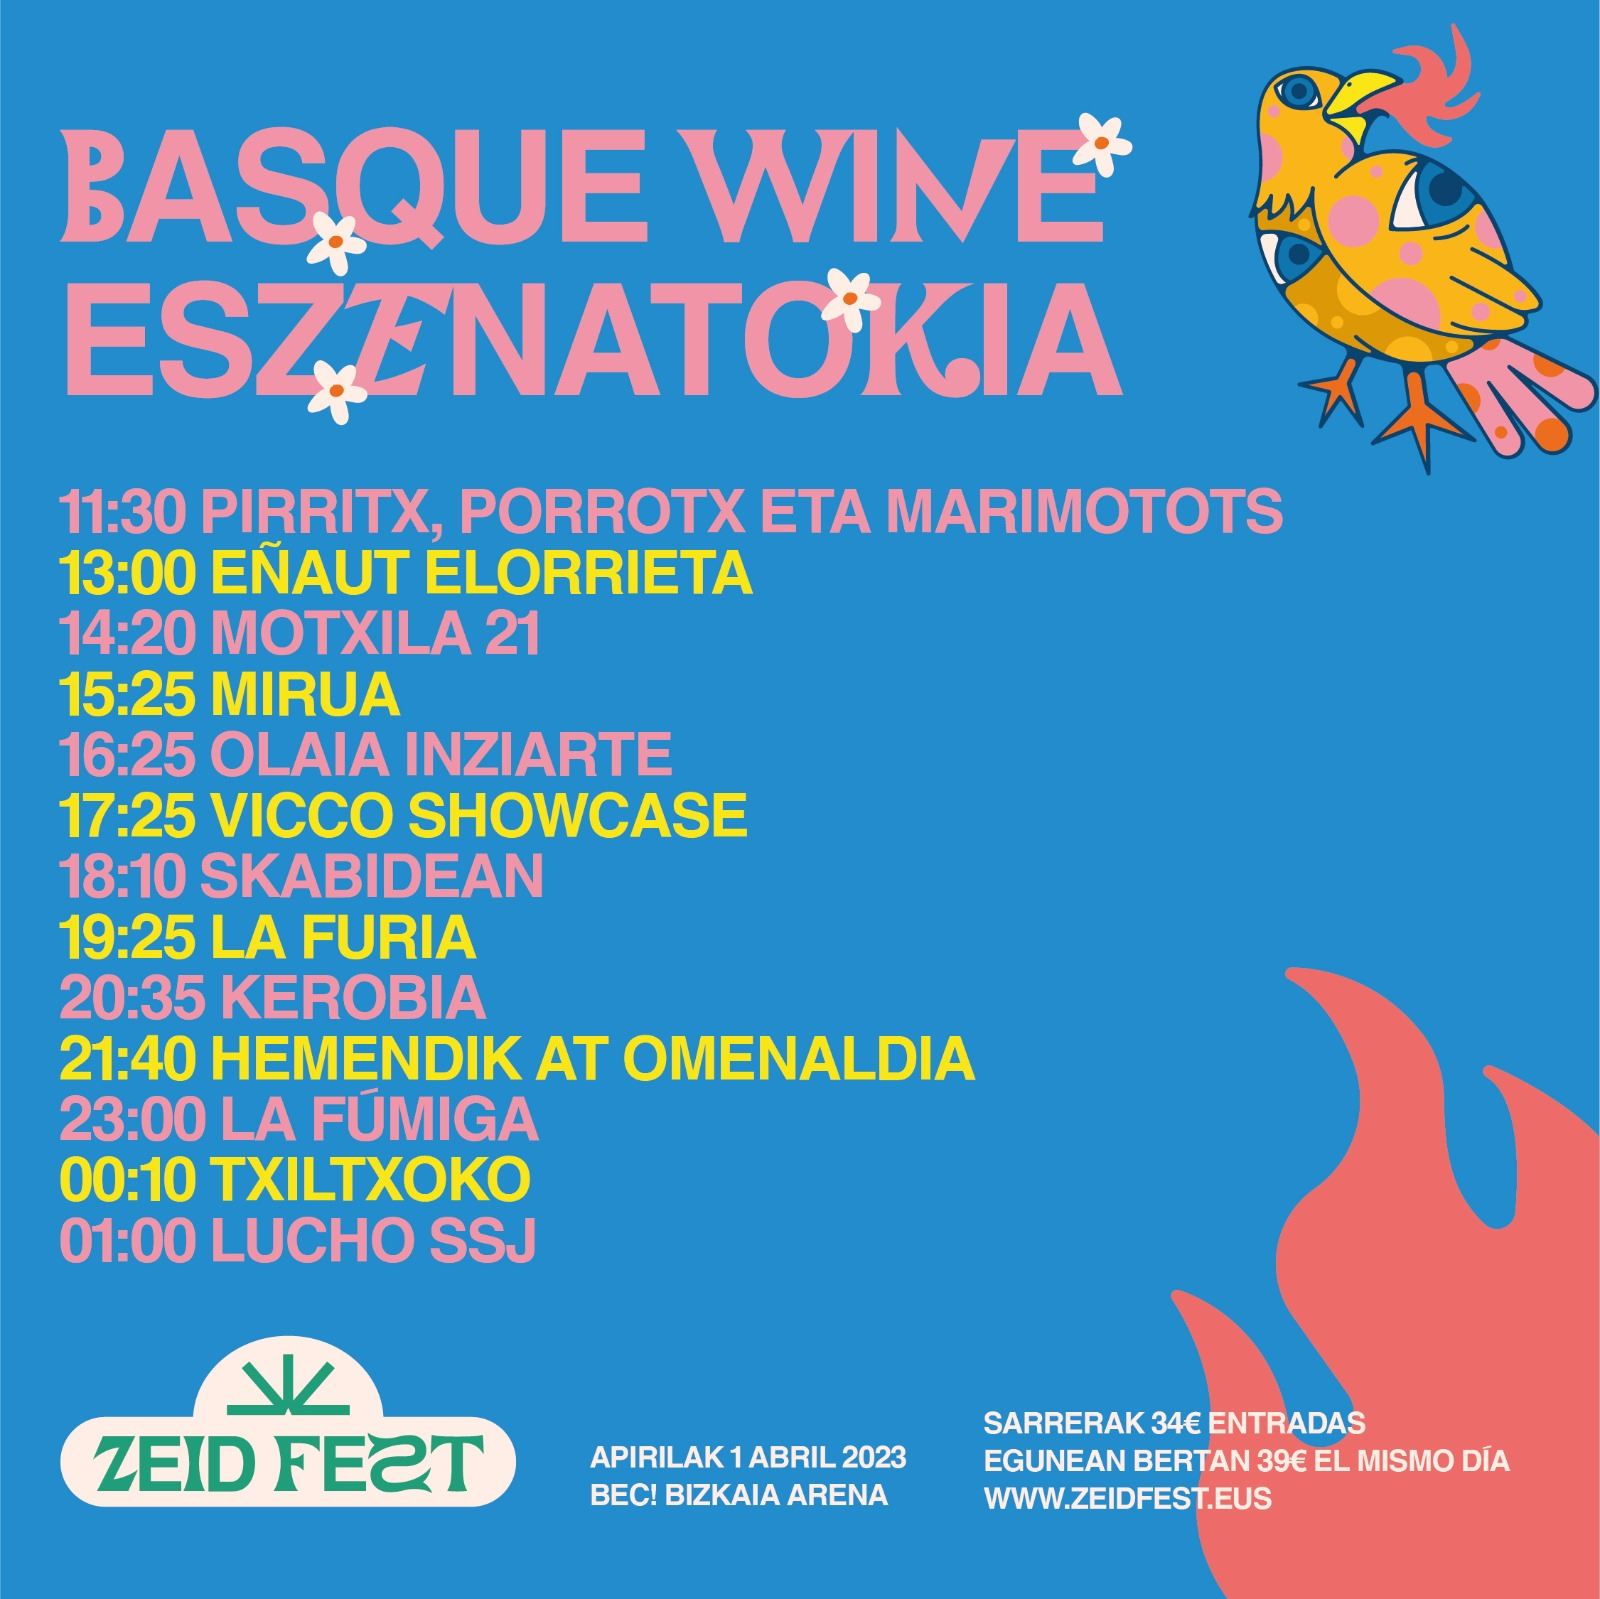 Basque Wine eszenatokia